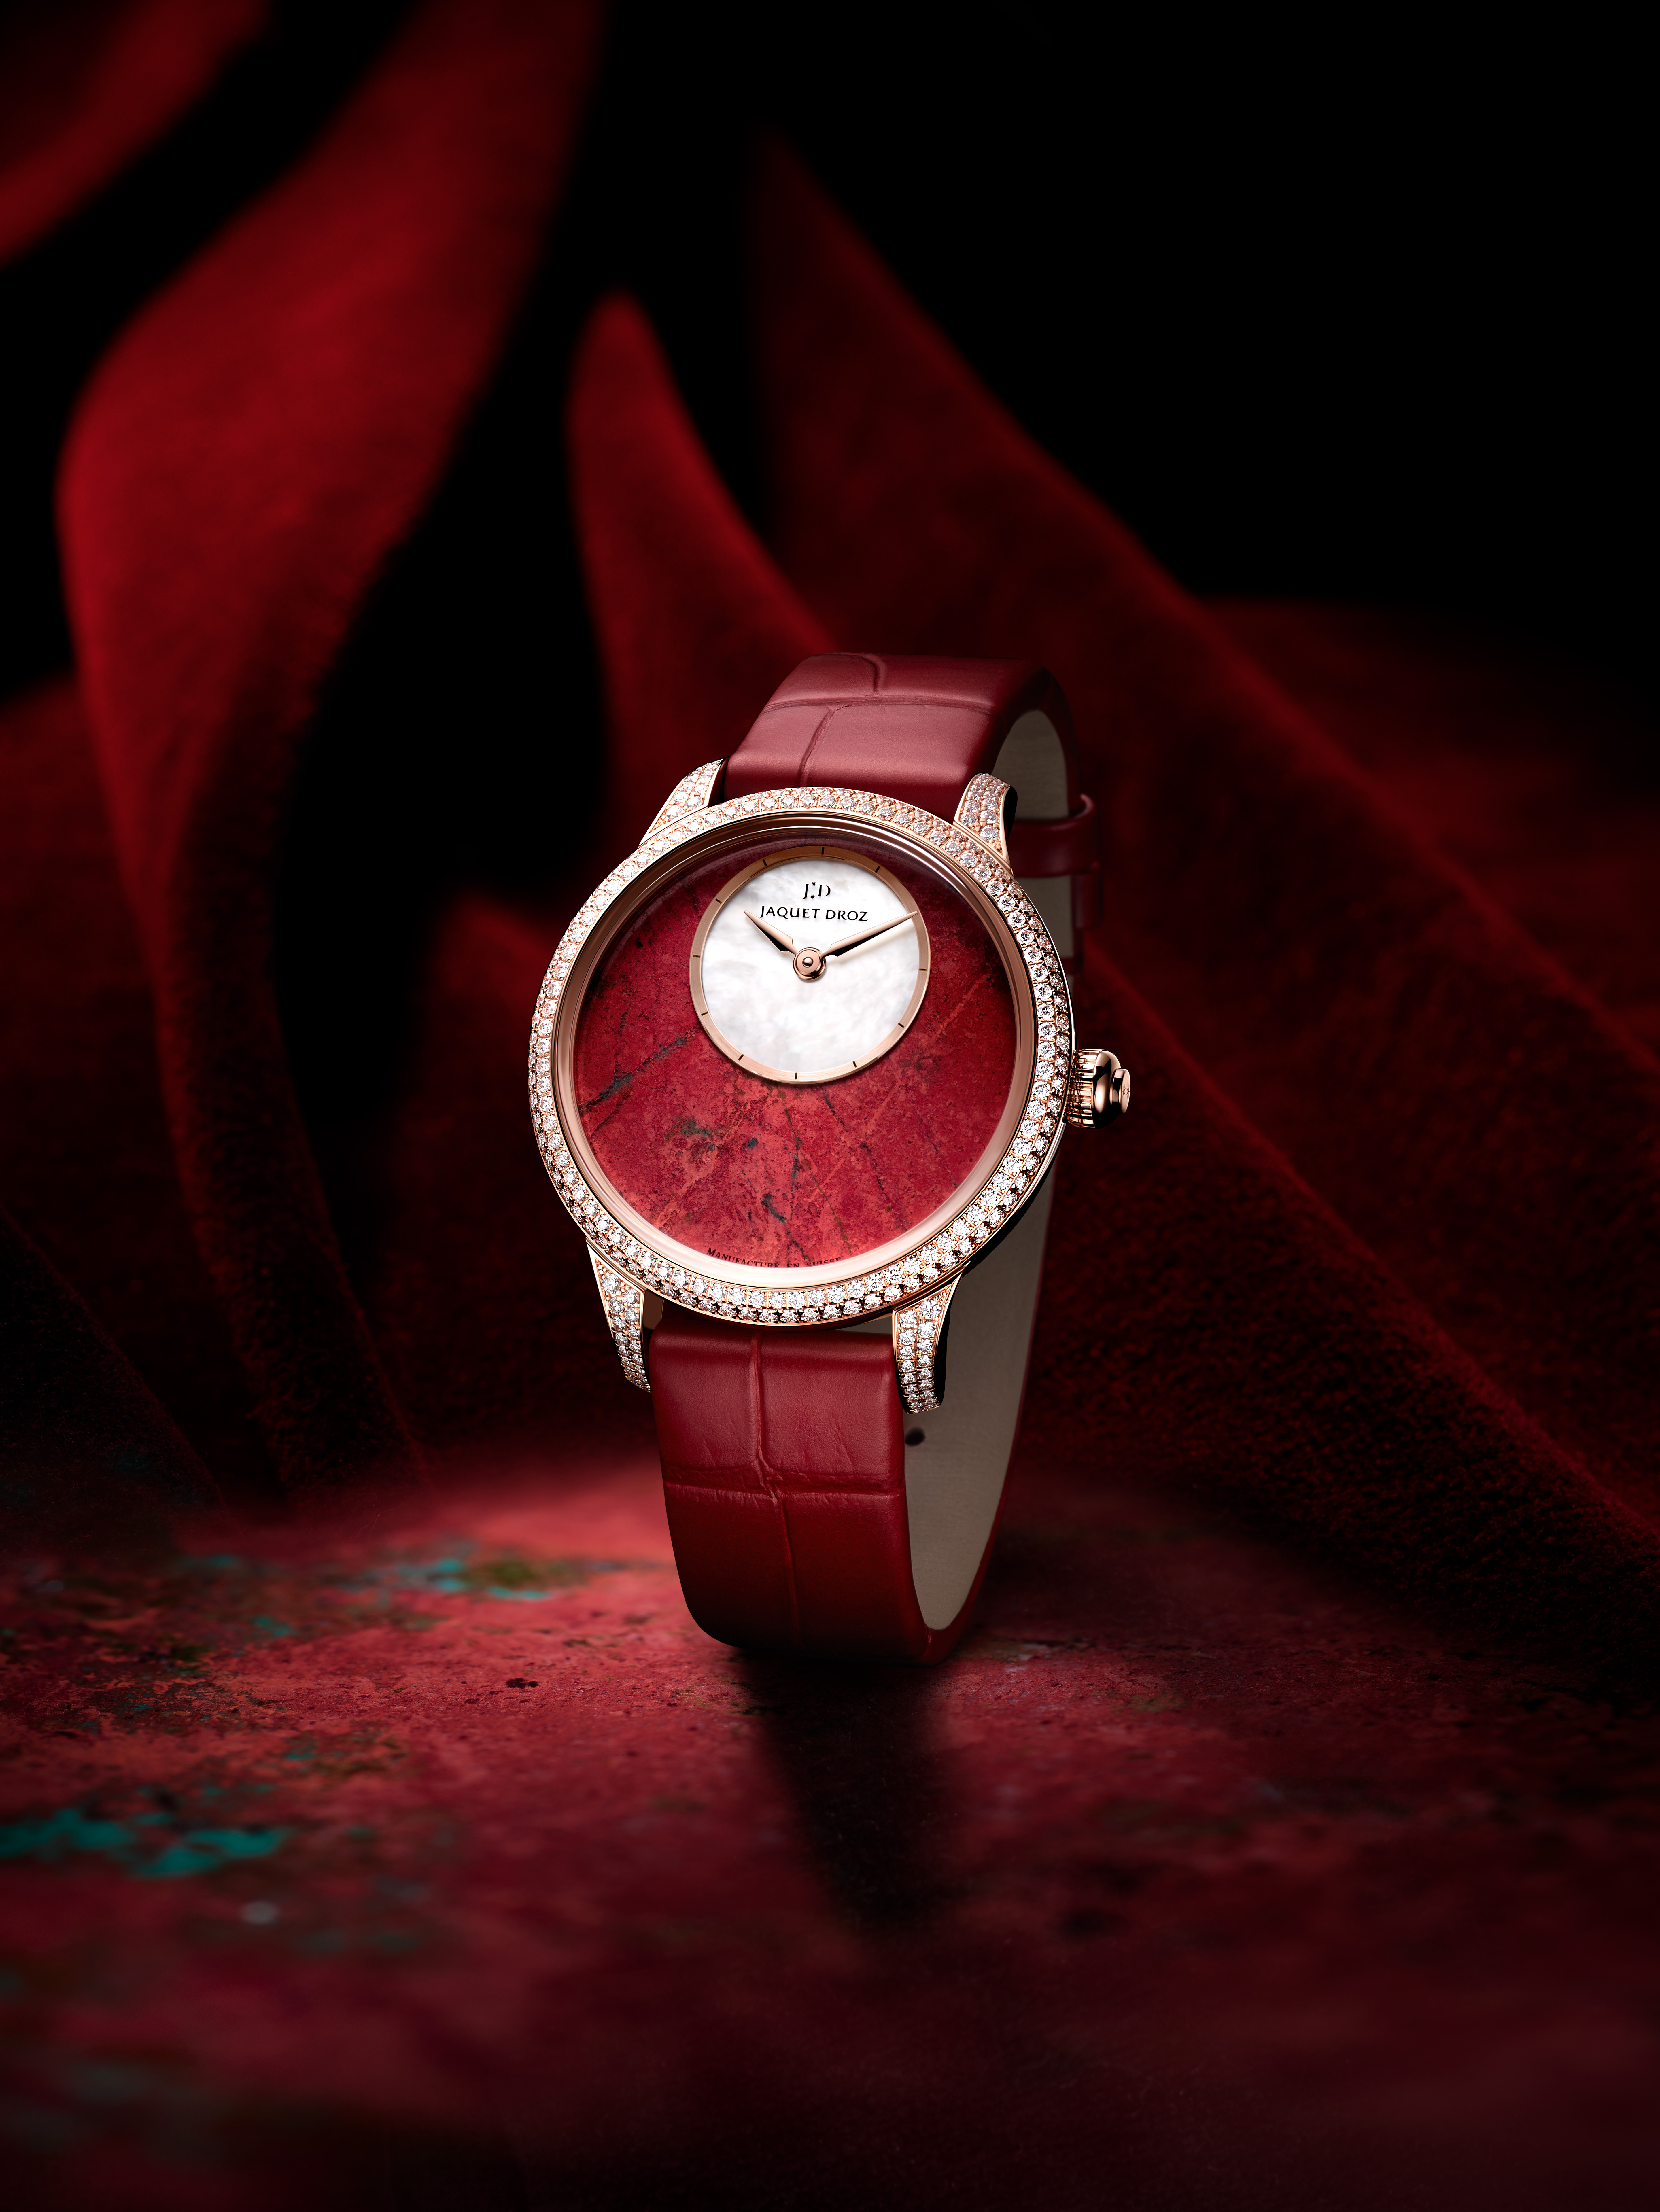 スイス超高級機械式腕時計ブランド、ジャケ・ドローが世界限定28本の